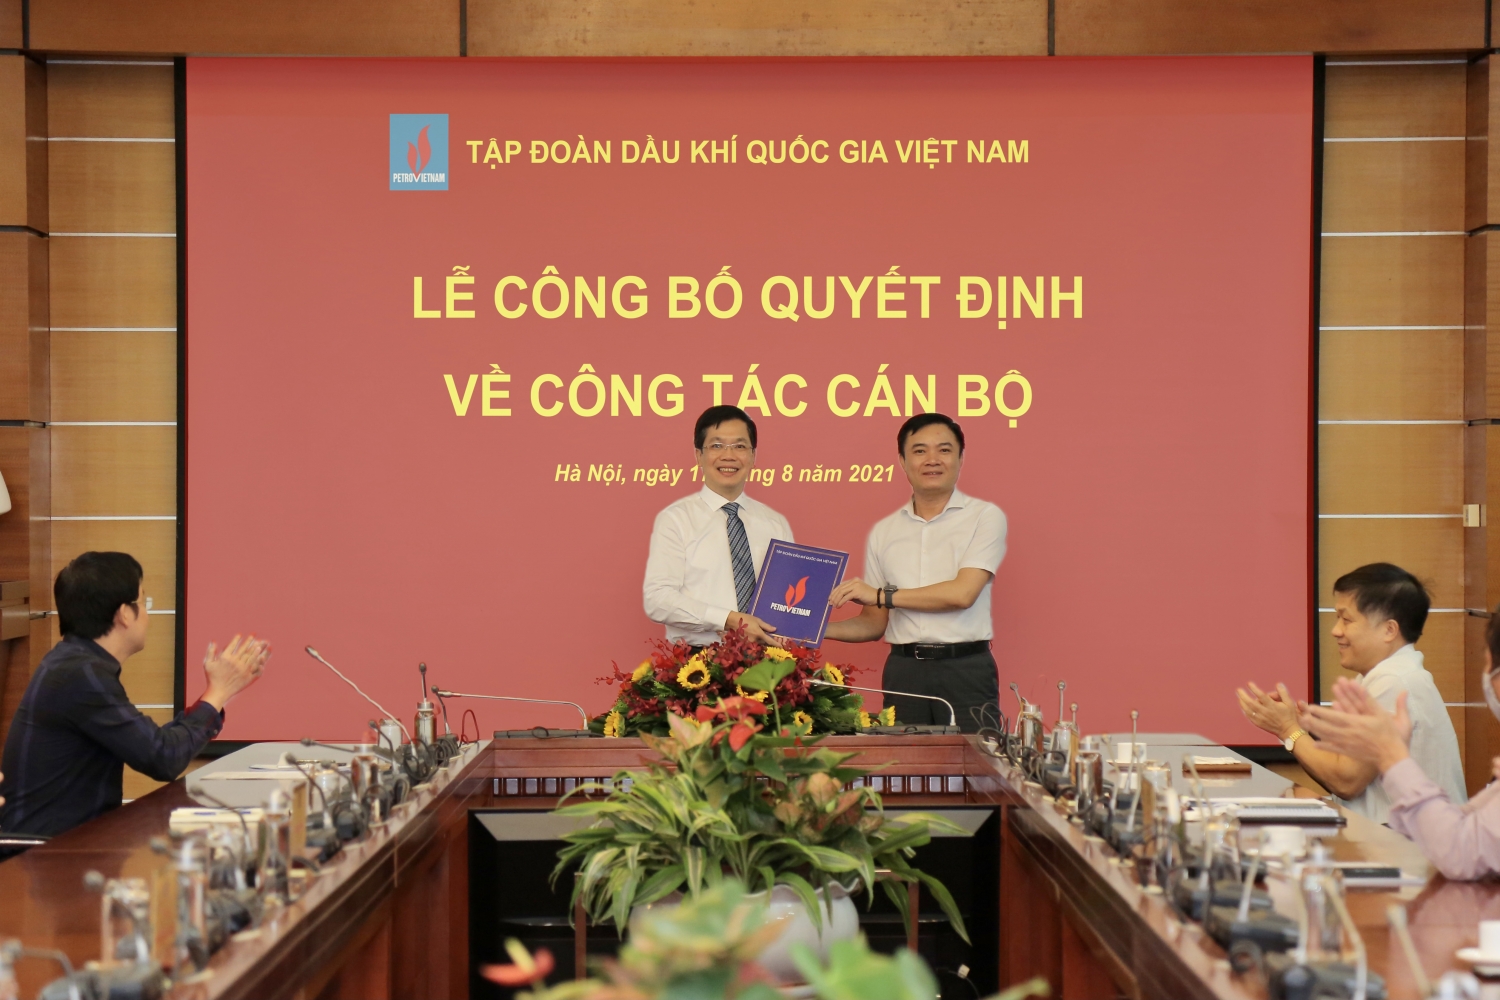 Phó Tổng giám đốc Lê Ngọc Sơn trao quyết định cho Phó Trưởng Ban Quản lý Hợp đồng Dầu khí Đinh Mạnh Quân